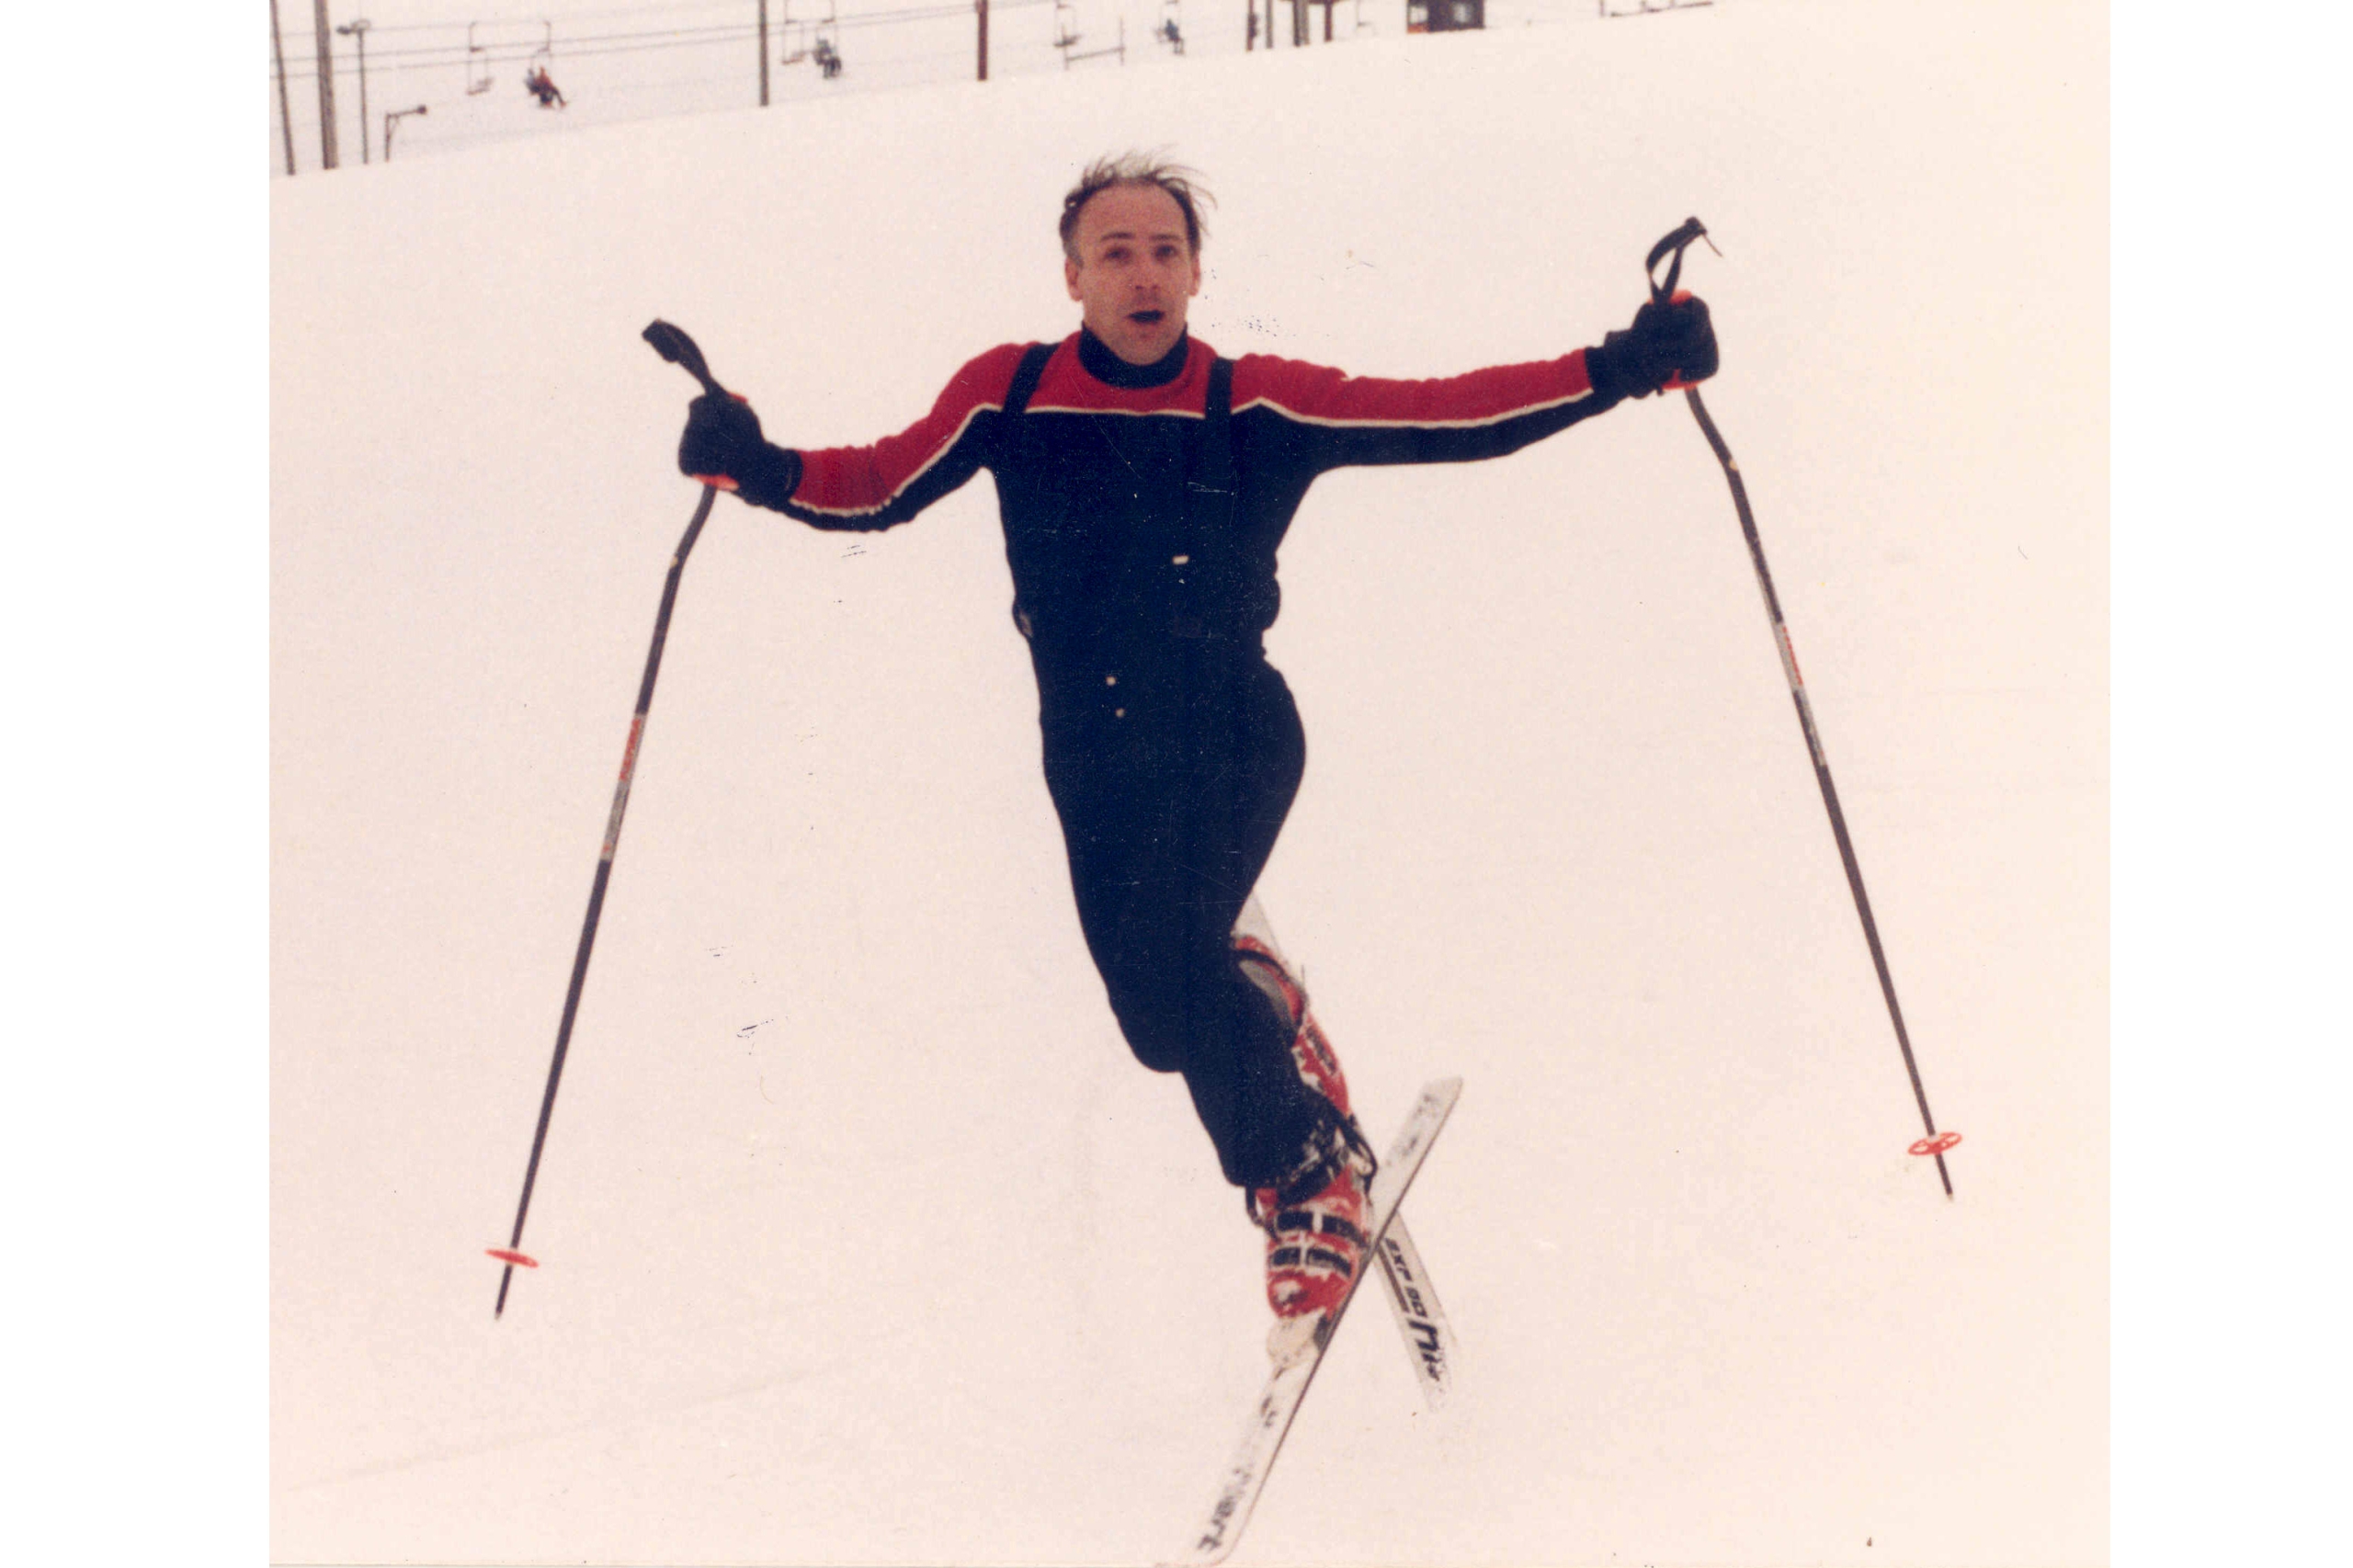 a skier performs ski ballet